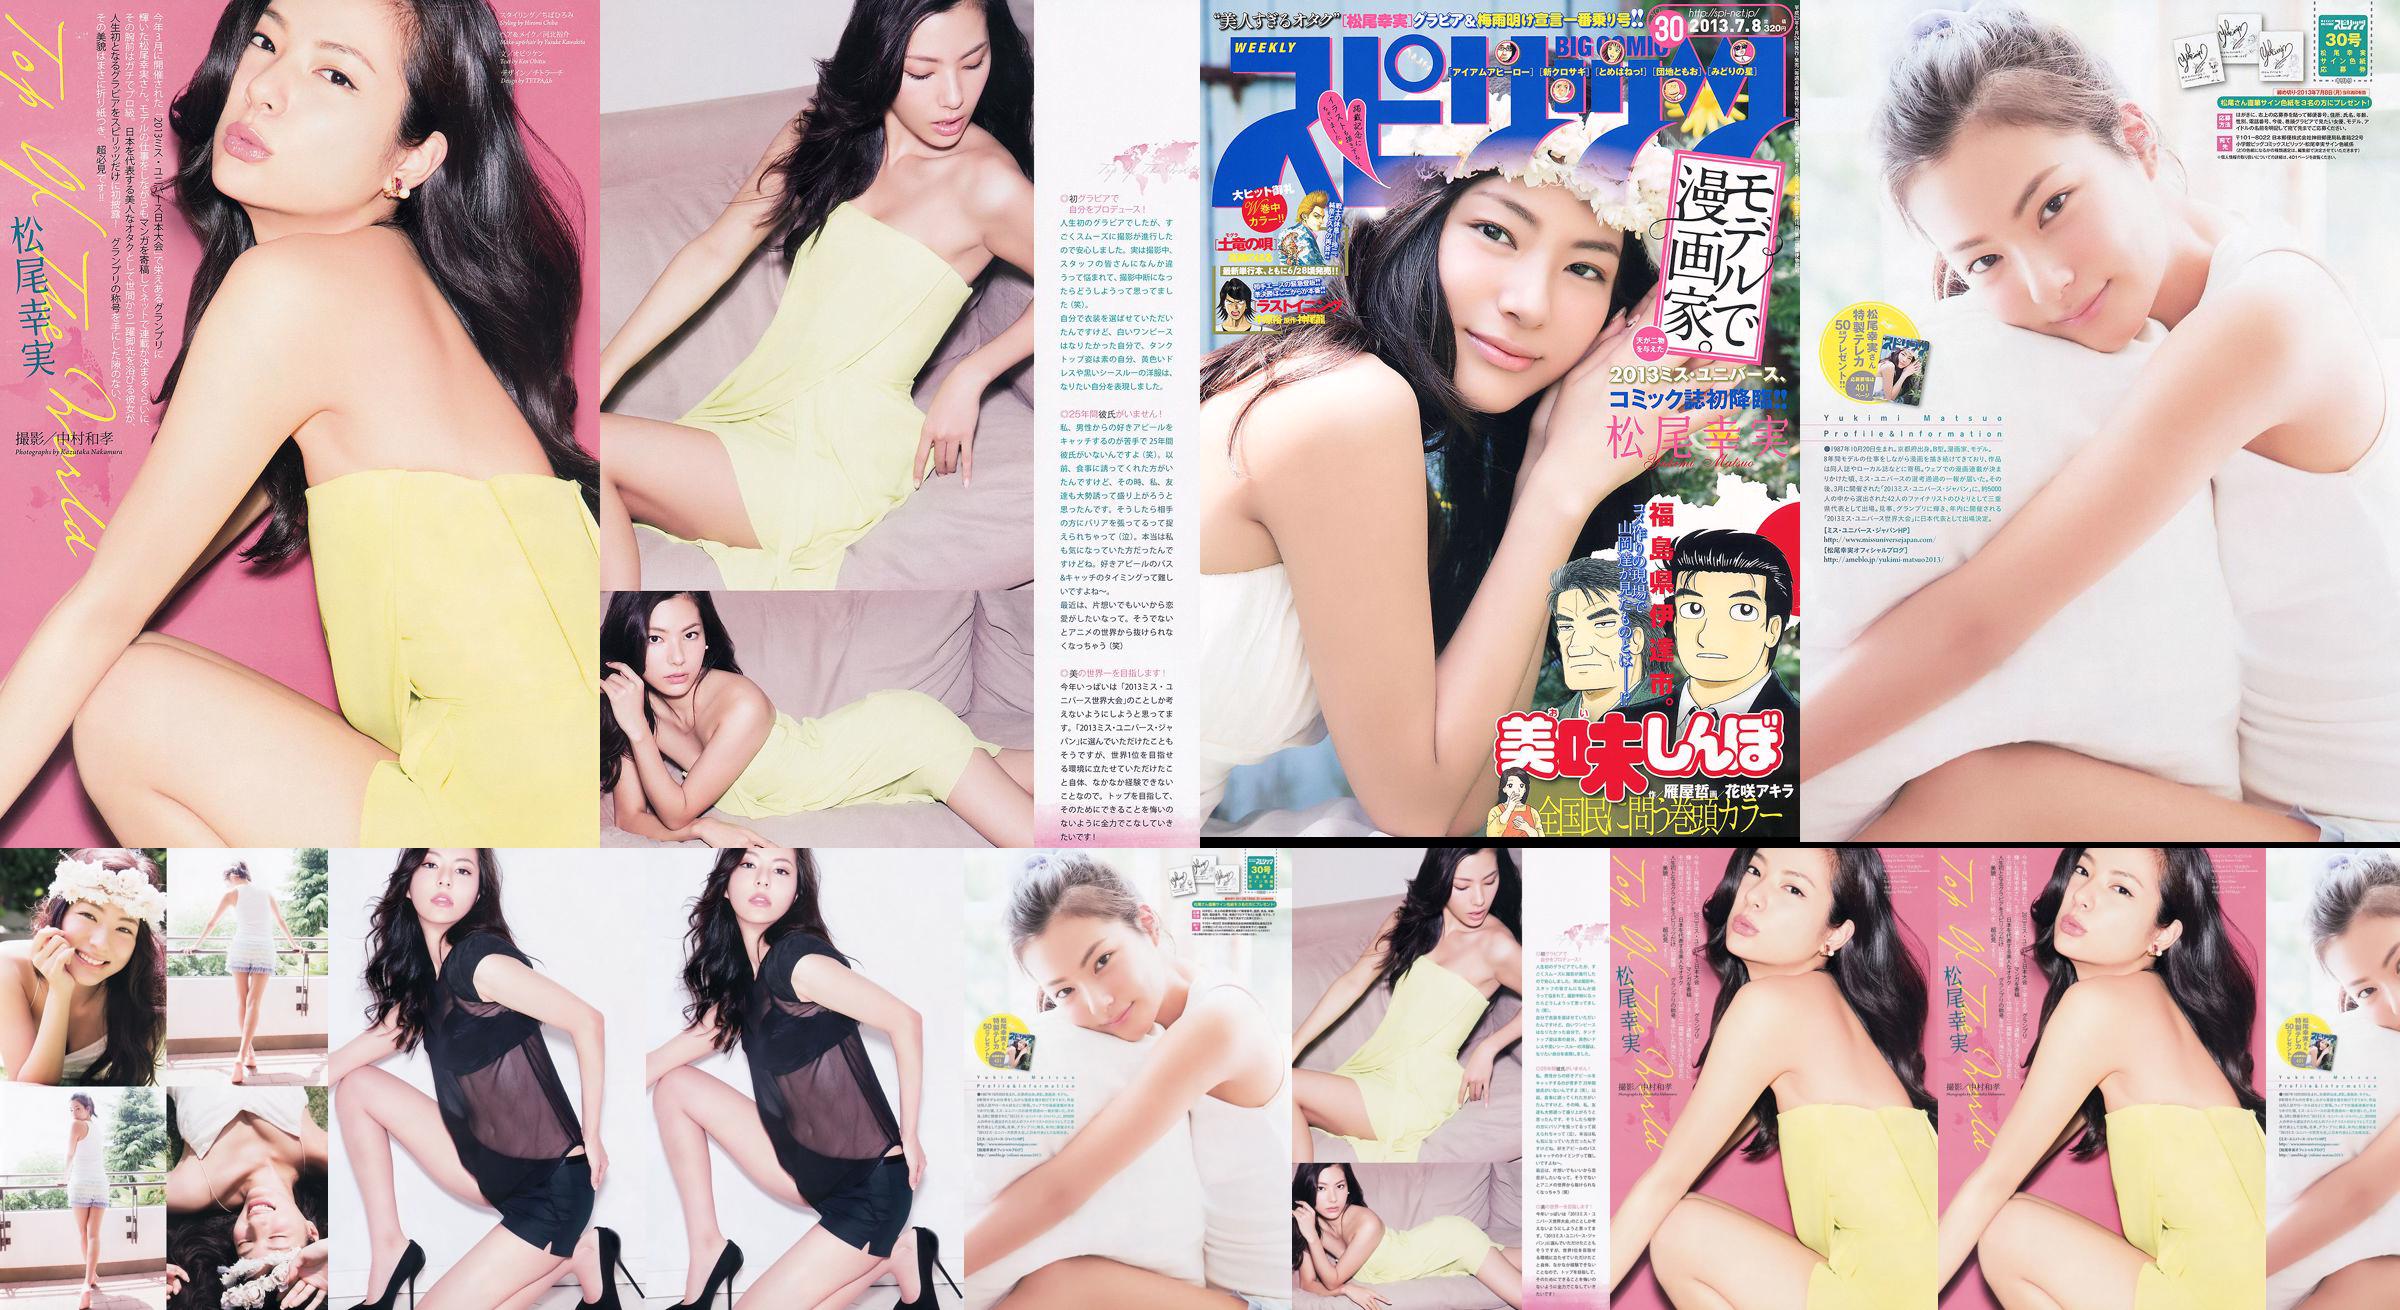 [Grands esprits de la bande dessinée hebdomadaire] Komi Matsuo 2013 No.30 Photo Magazine No.6bc625 Page 2